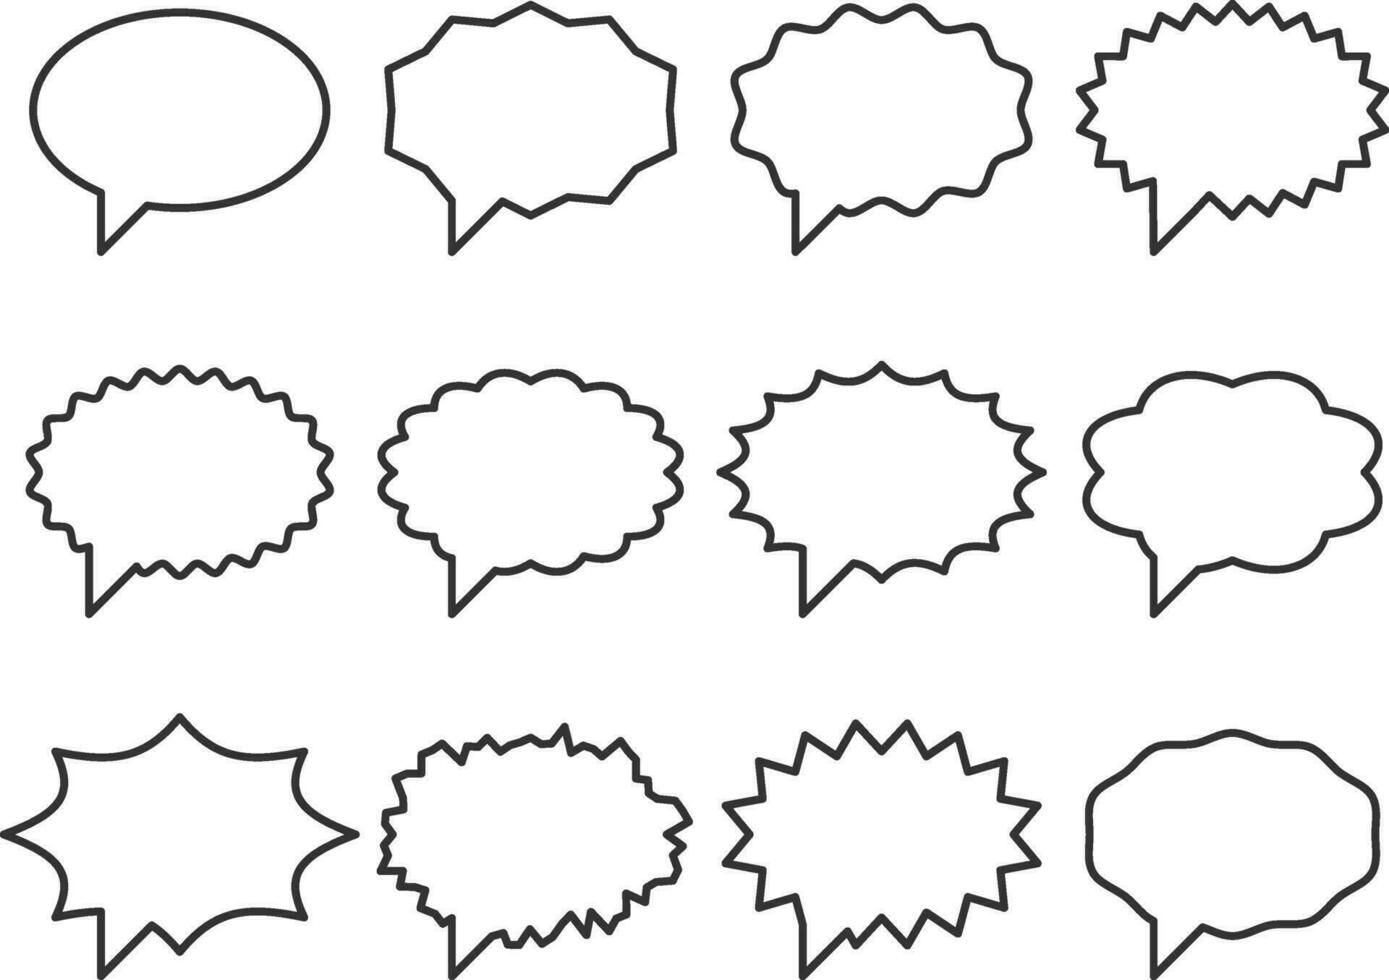 définir le vecteur de discours de bulles de conversation. éléments de conception d'icône de bulle vide vide. modèle de symbole de chat en ligne. silhouette d'autocollants de ballon de dialogue de collection.